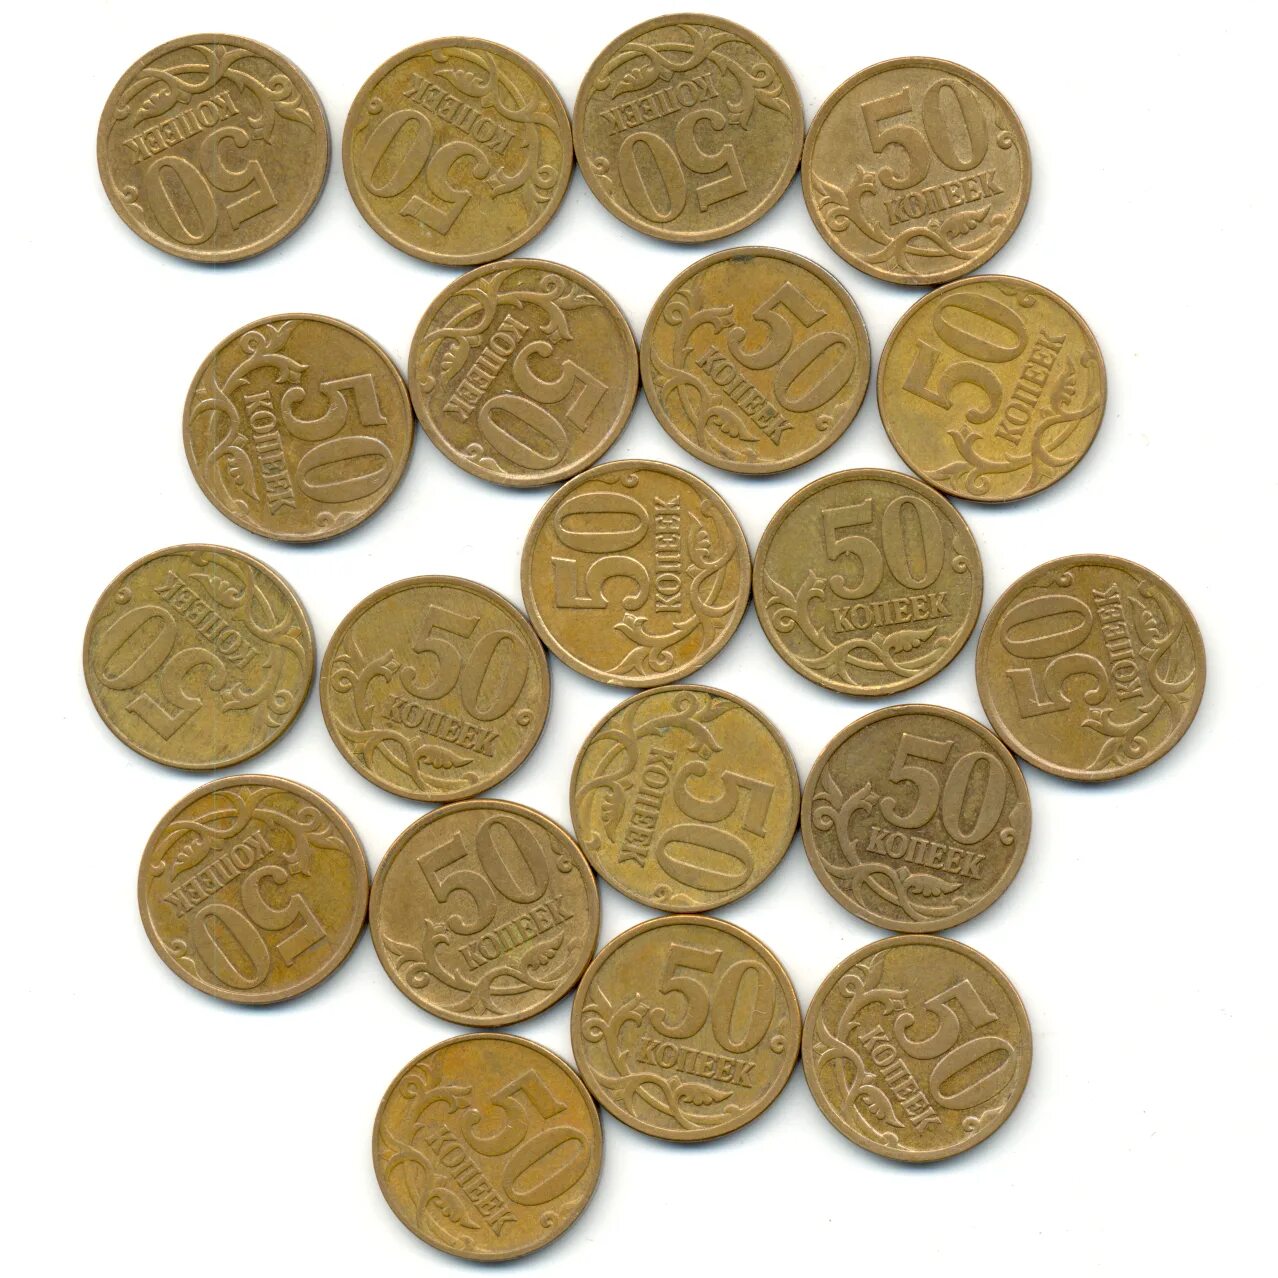 50 Копеек 2017. Кант широкий в монете 50 копеек. Что можно много много много копеек купить. Покупка 50 копеек